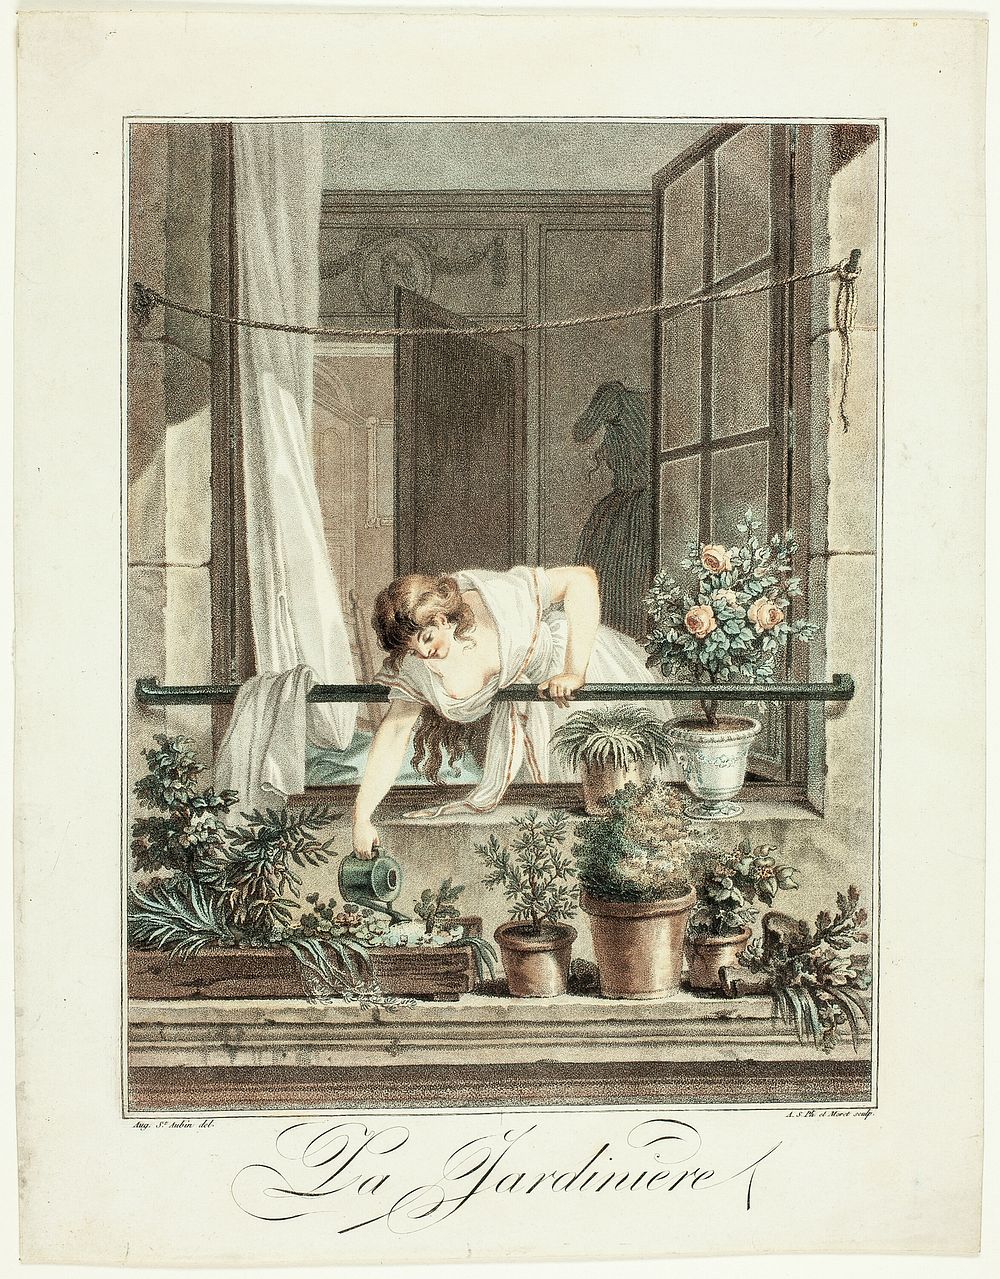 La Jardinière by Jean Baptiste Moret